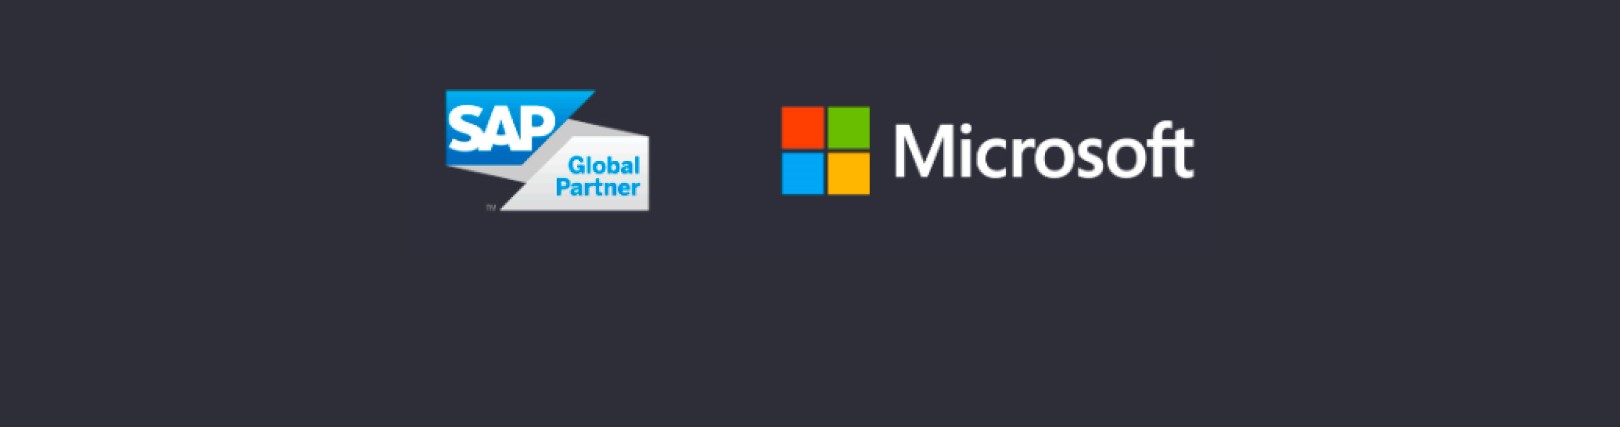 SAP Microsoft Partnerschaften 